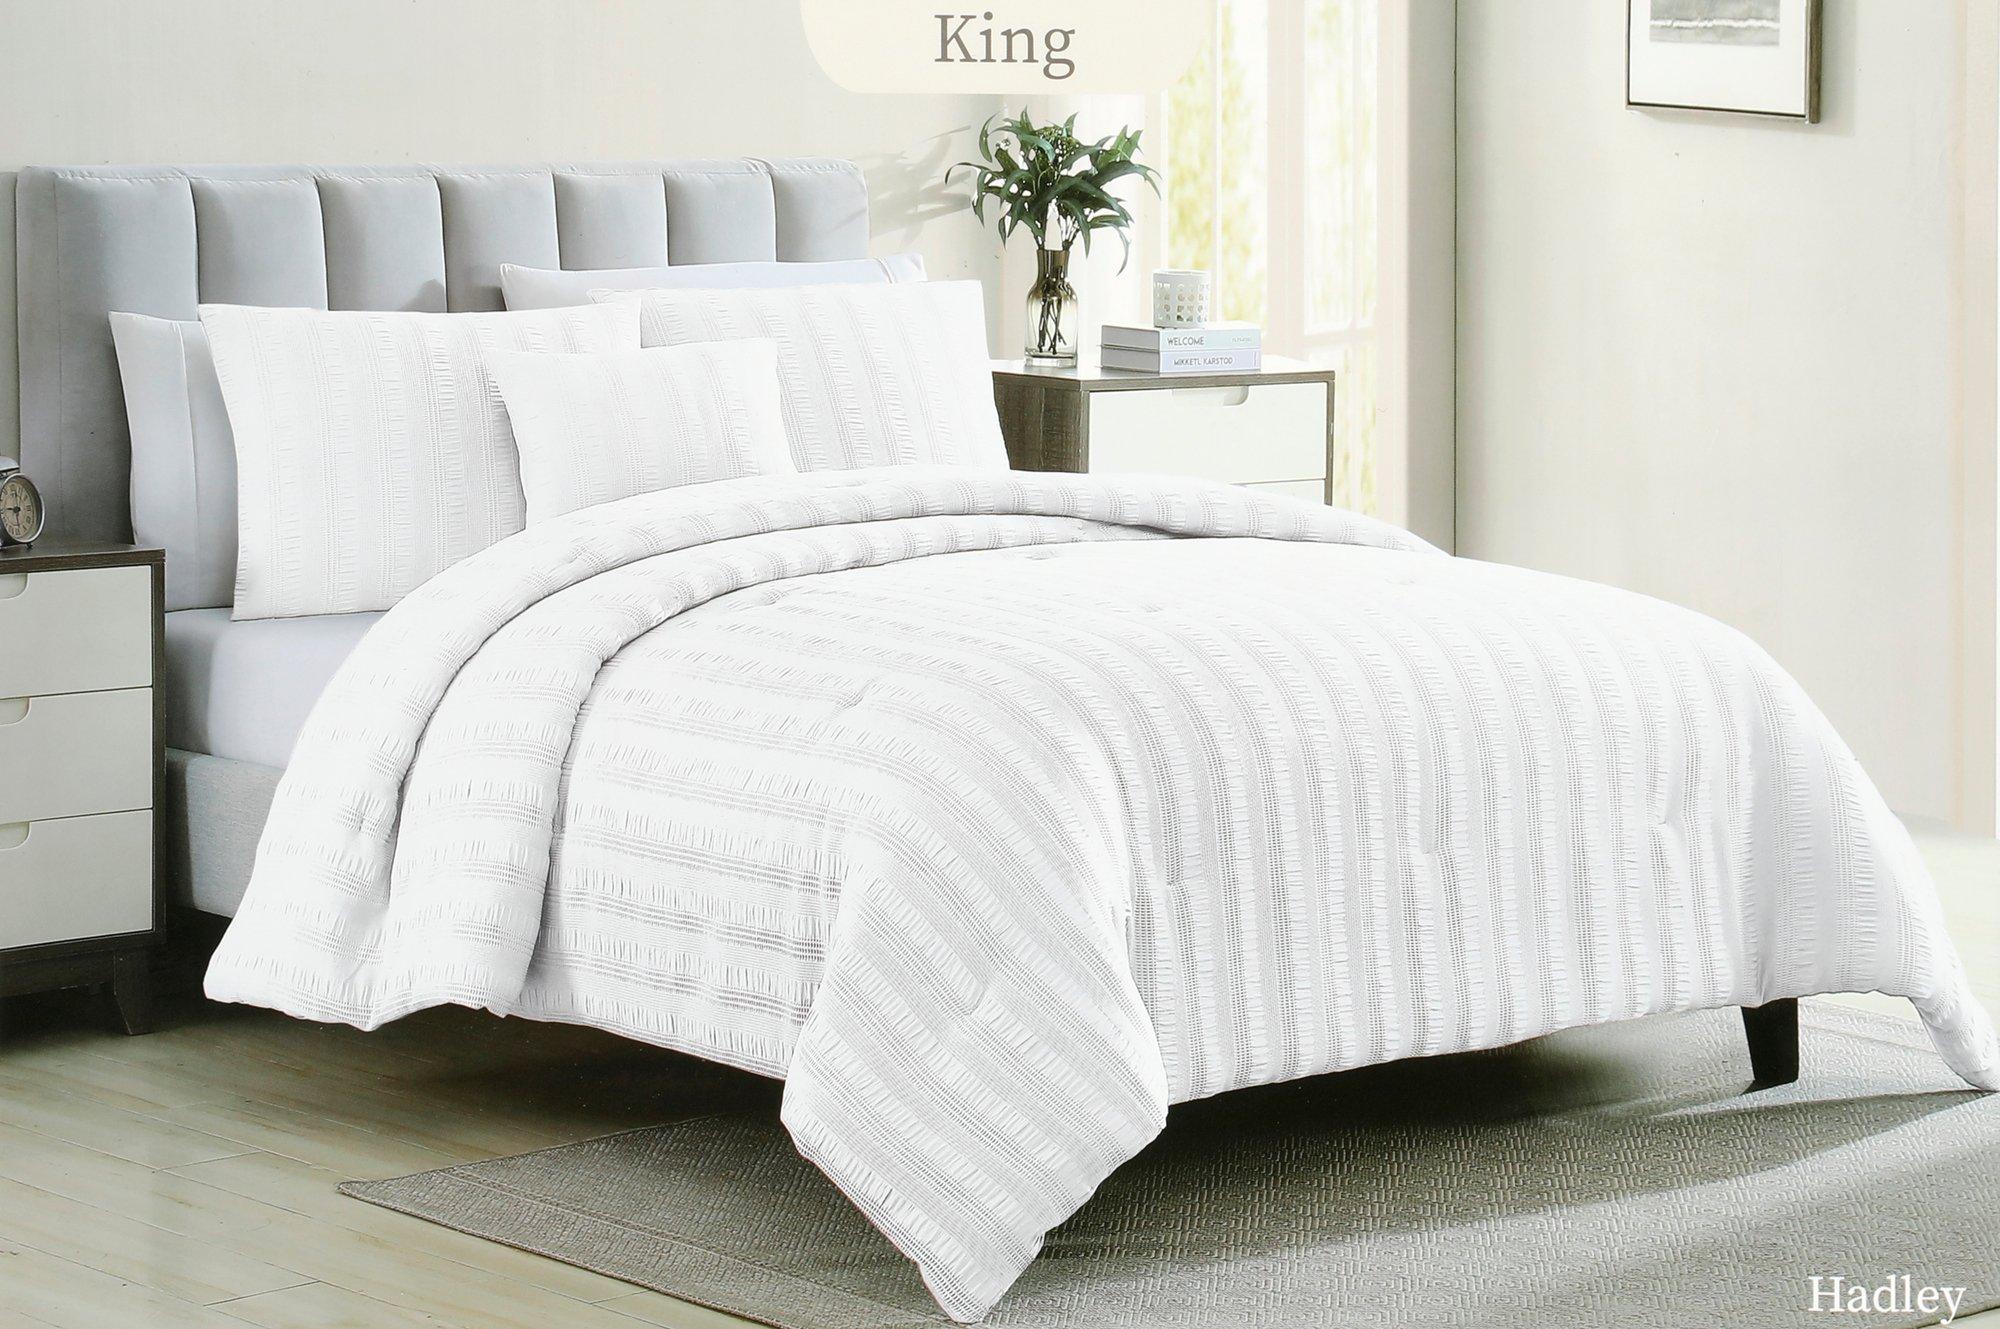 King 4 Pc Comforter Set